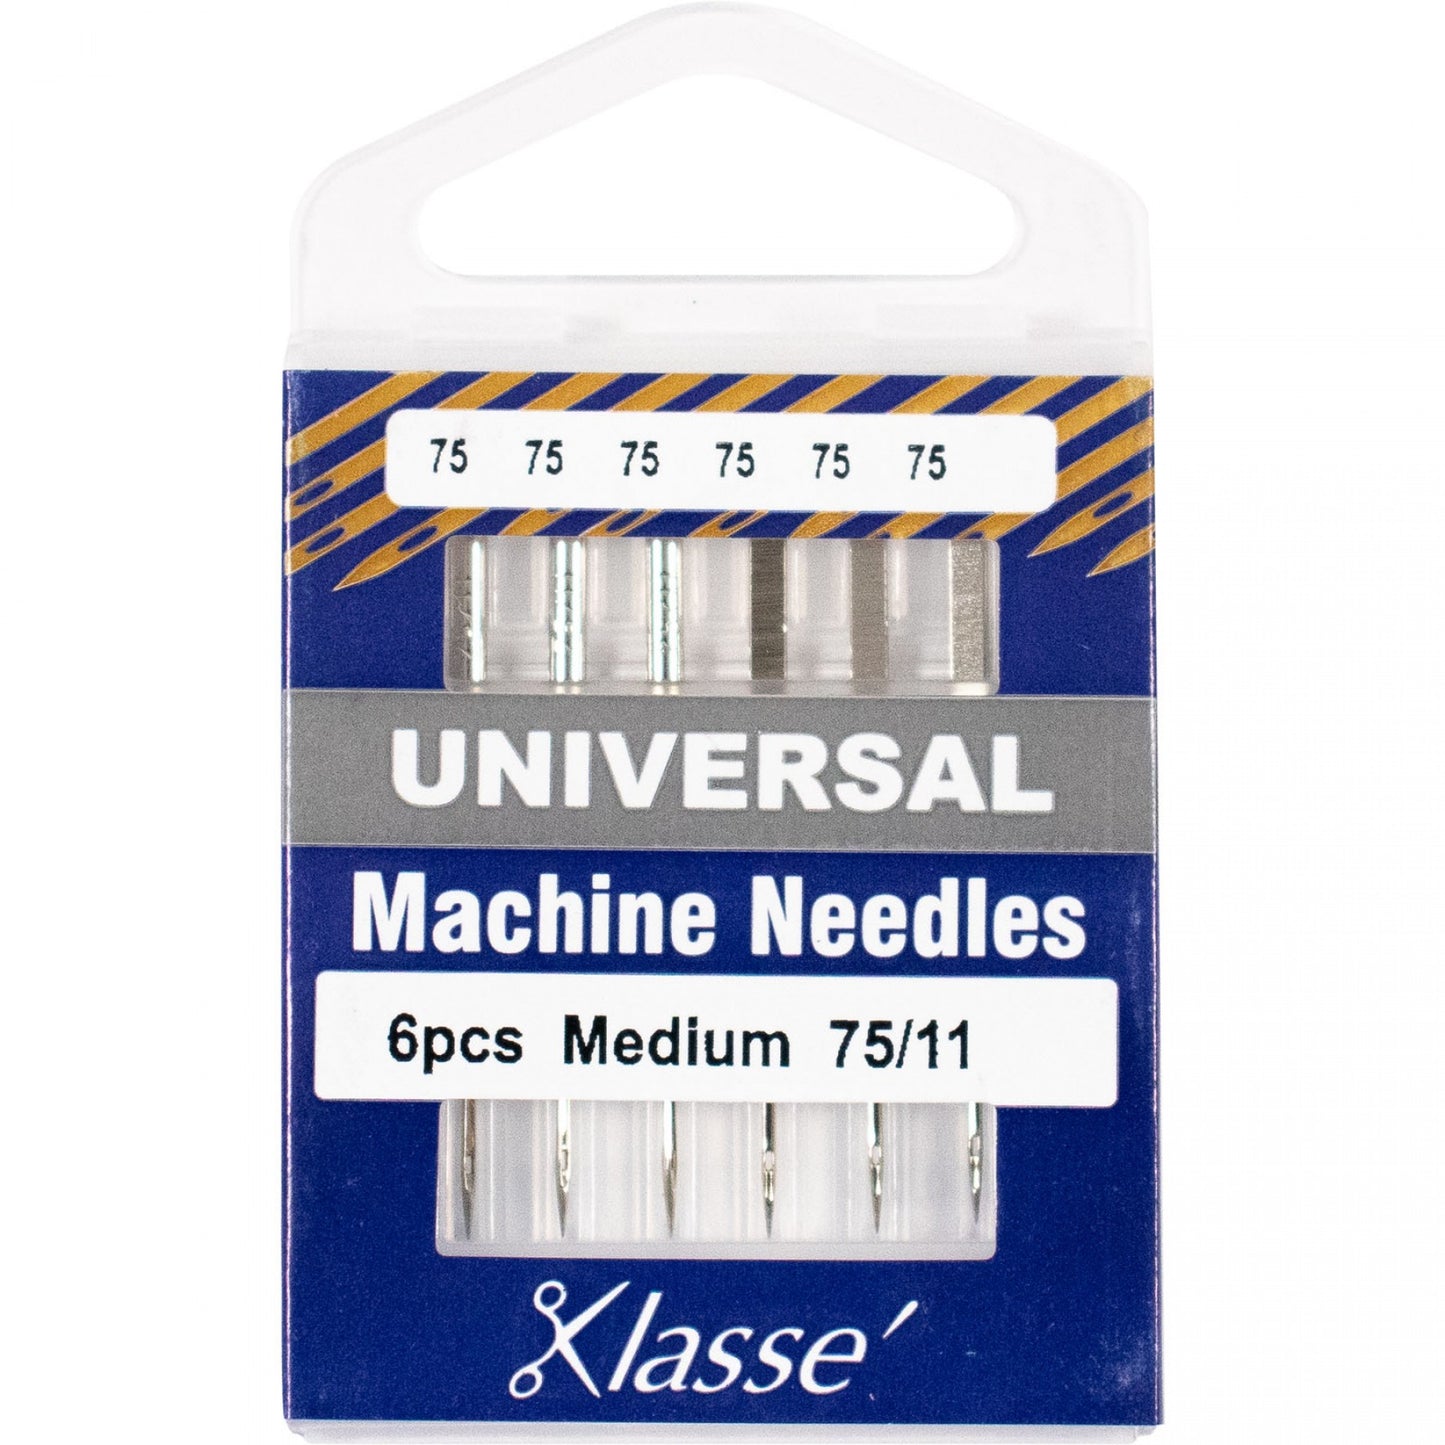 KLASSE´ Universal Needles Cassette - Size 75/11 - 6 count